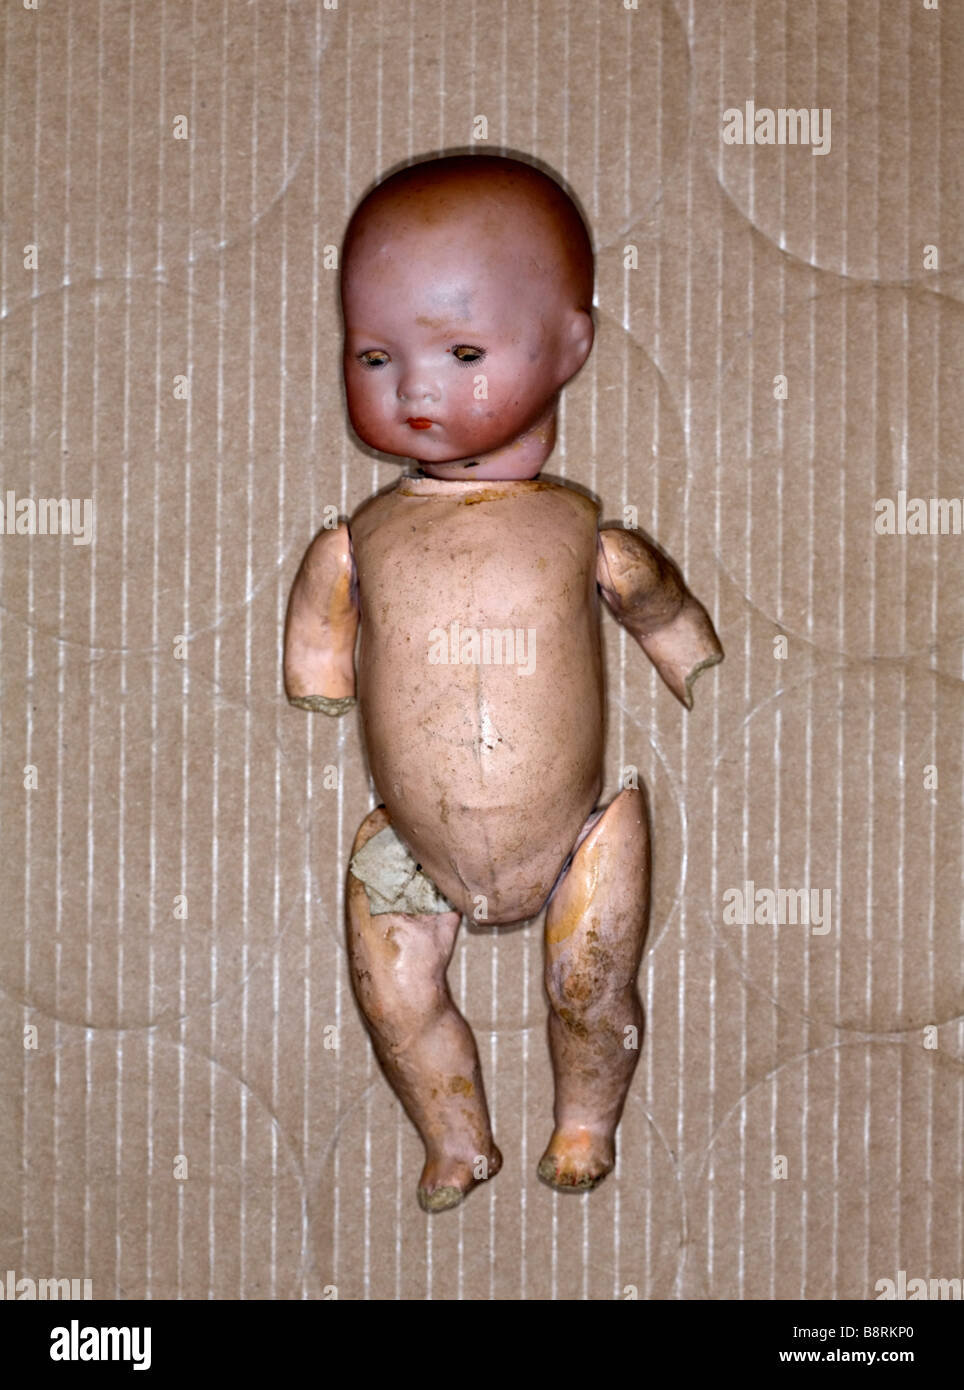 Portrait de poupée jouet endommagé dans une boîte en carton. Banque D'Images